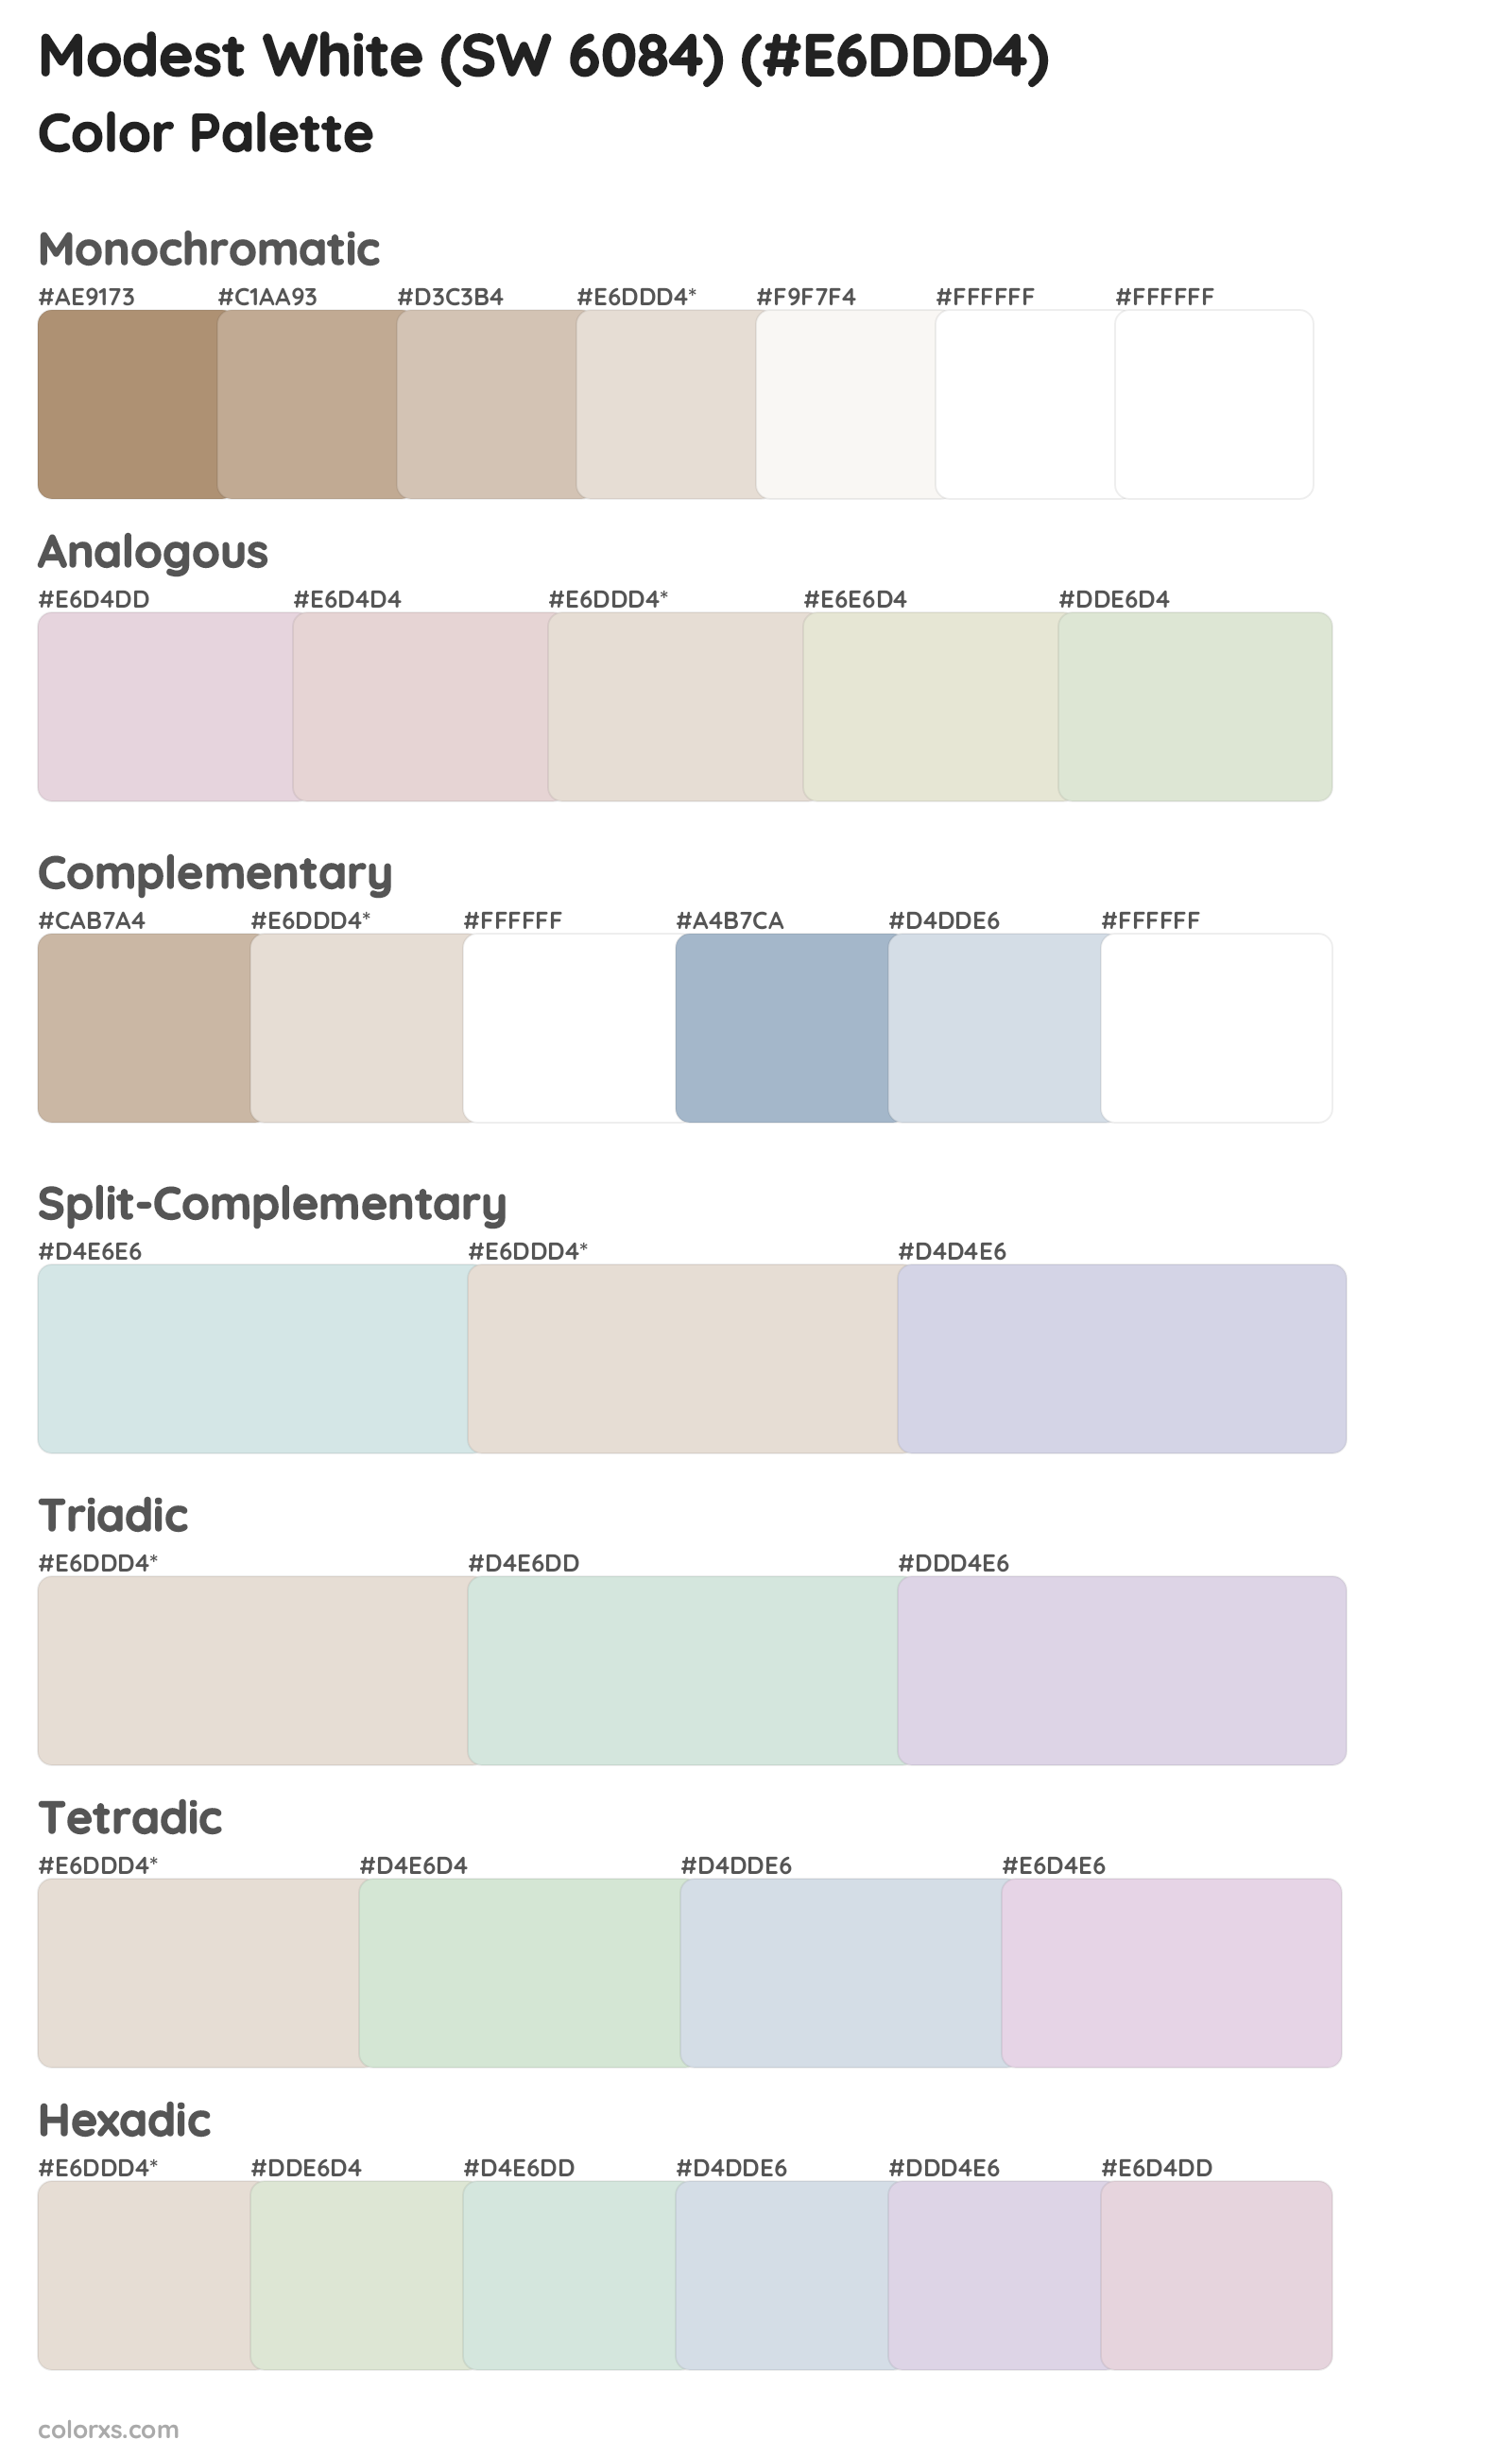 Modest White (SW 6084) Color Scheme Palettes